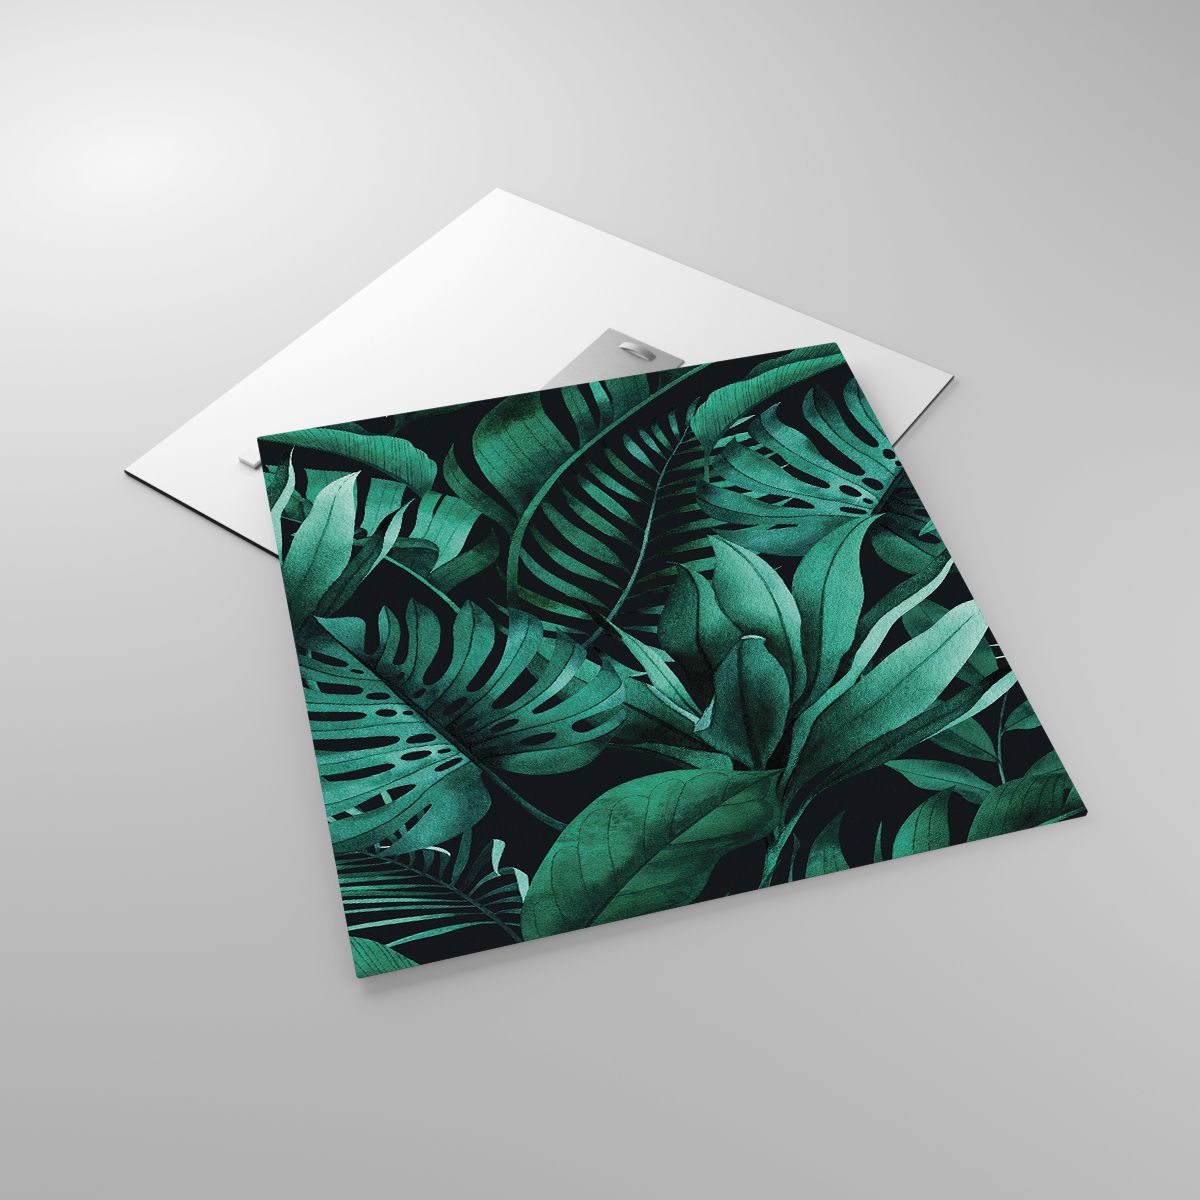 Glasbild Exotische Pflanze, Glasbild Palmblatt, Glasbild Monstera-Blatt, Glasbild Natur, Glasbild Tropen